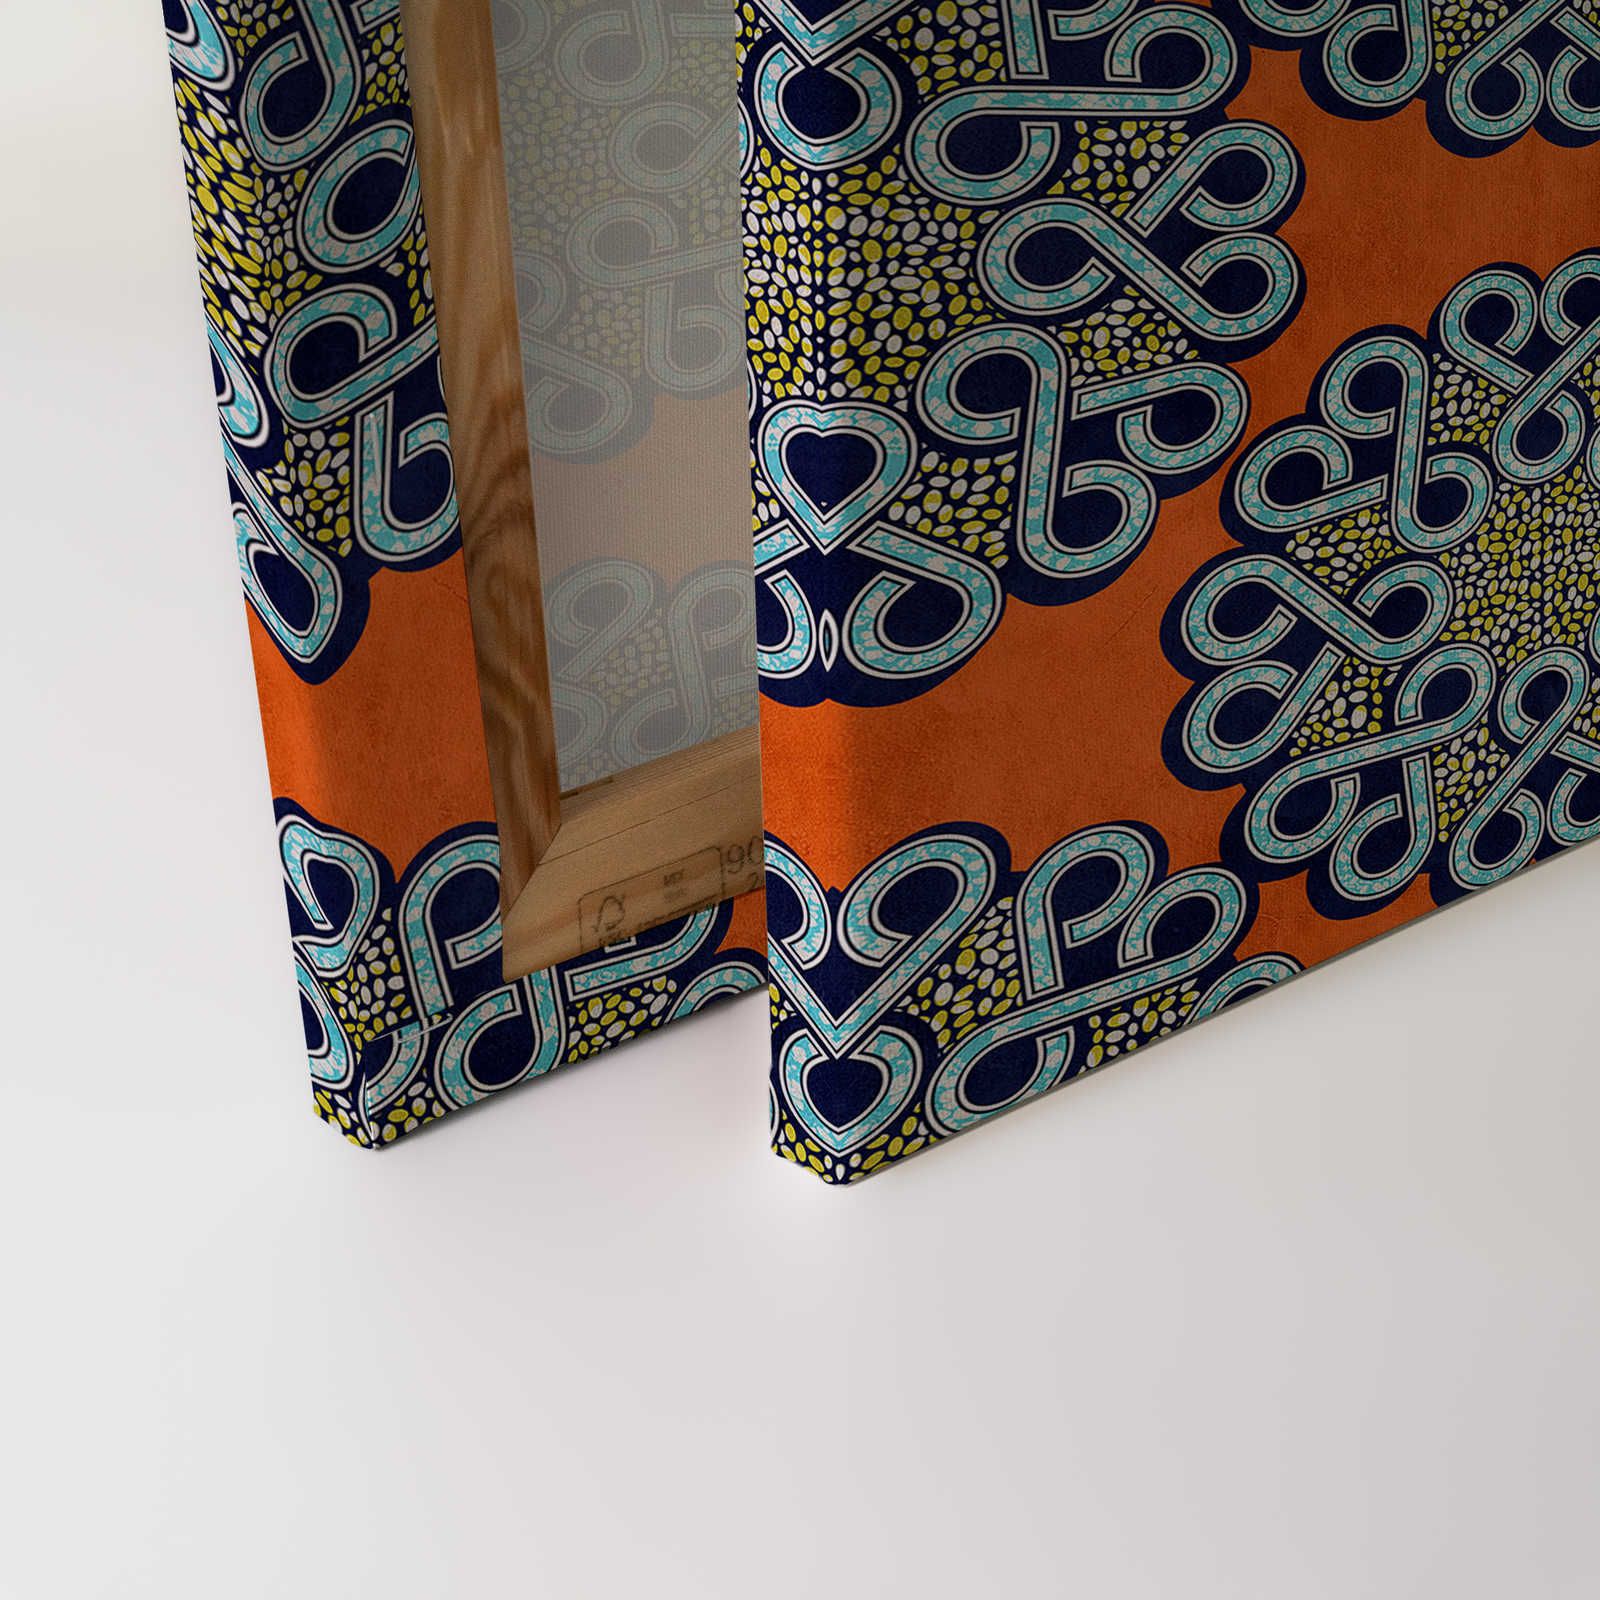             Dakar 2 - Toile africaine tissu de cire motif orange, bleu - 1,20 m x 0,80 m
        